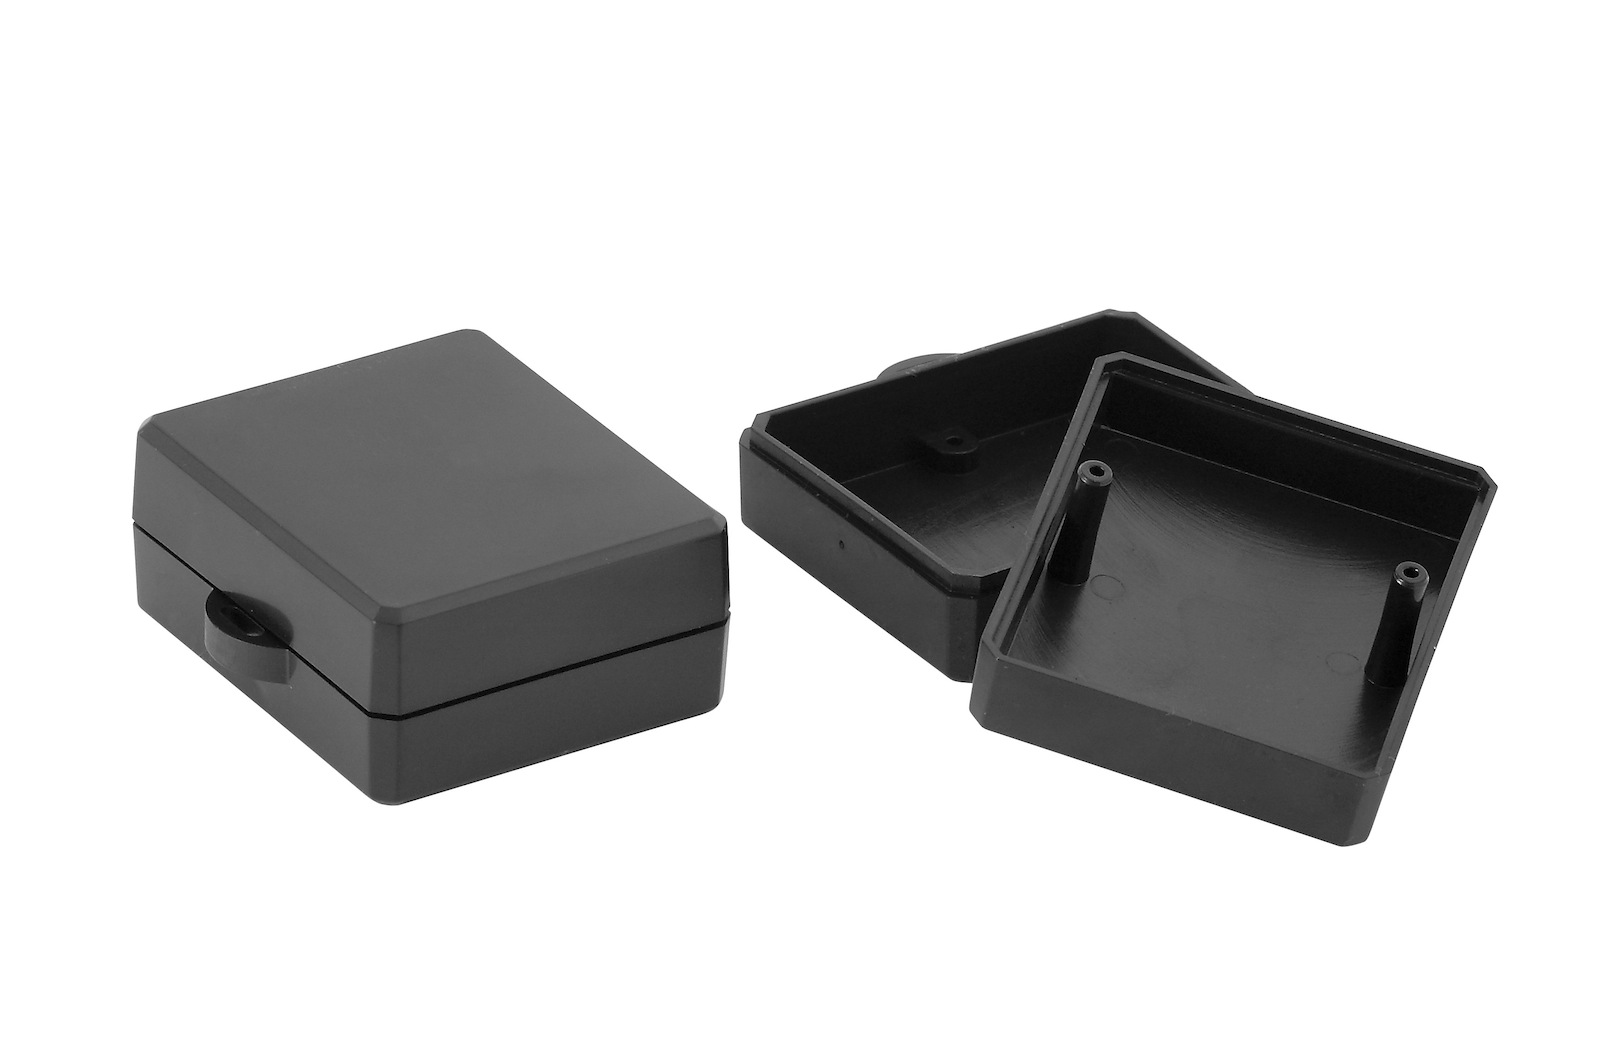 Maszczyk Plastová krabička KM-90BK, černá